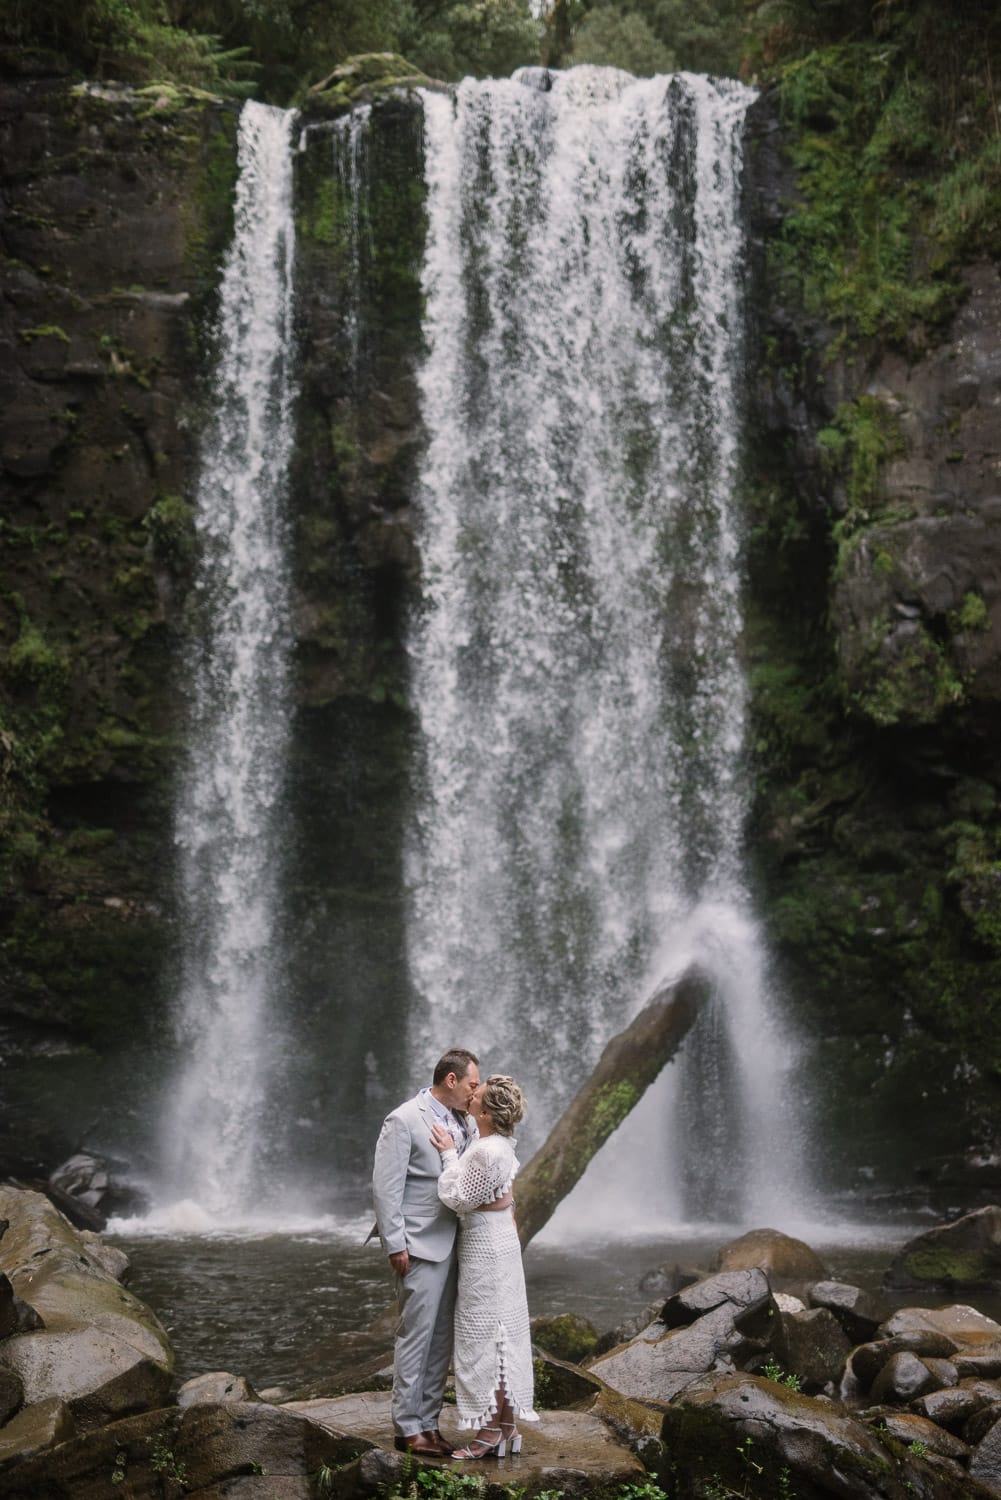 Wedding photos at a waterfall